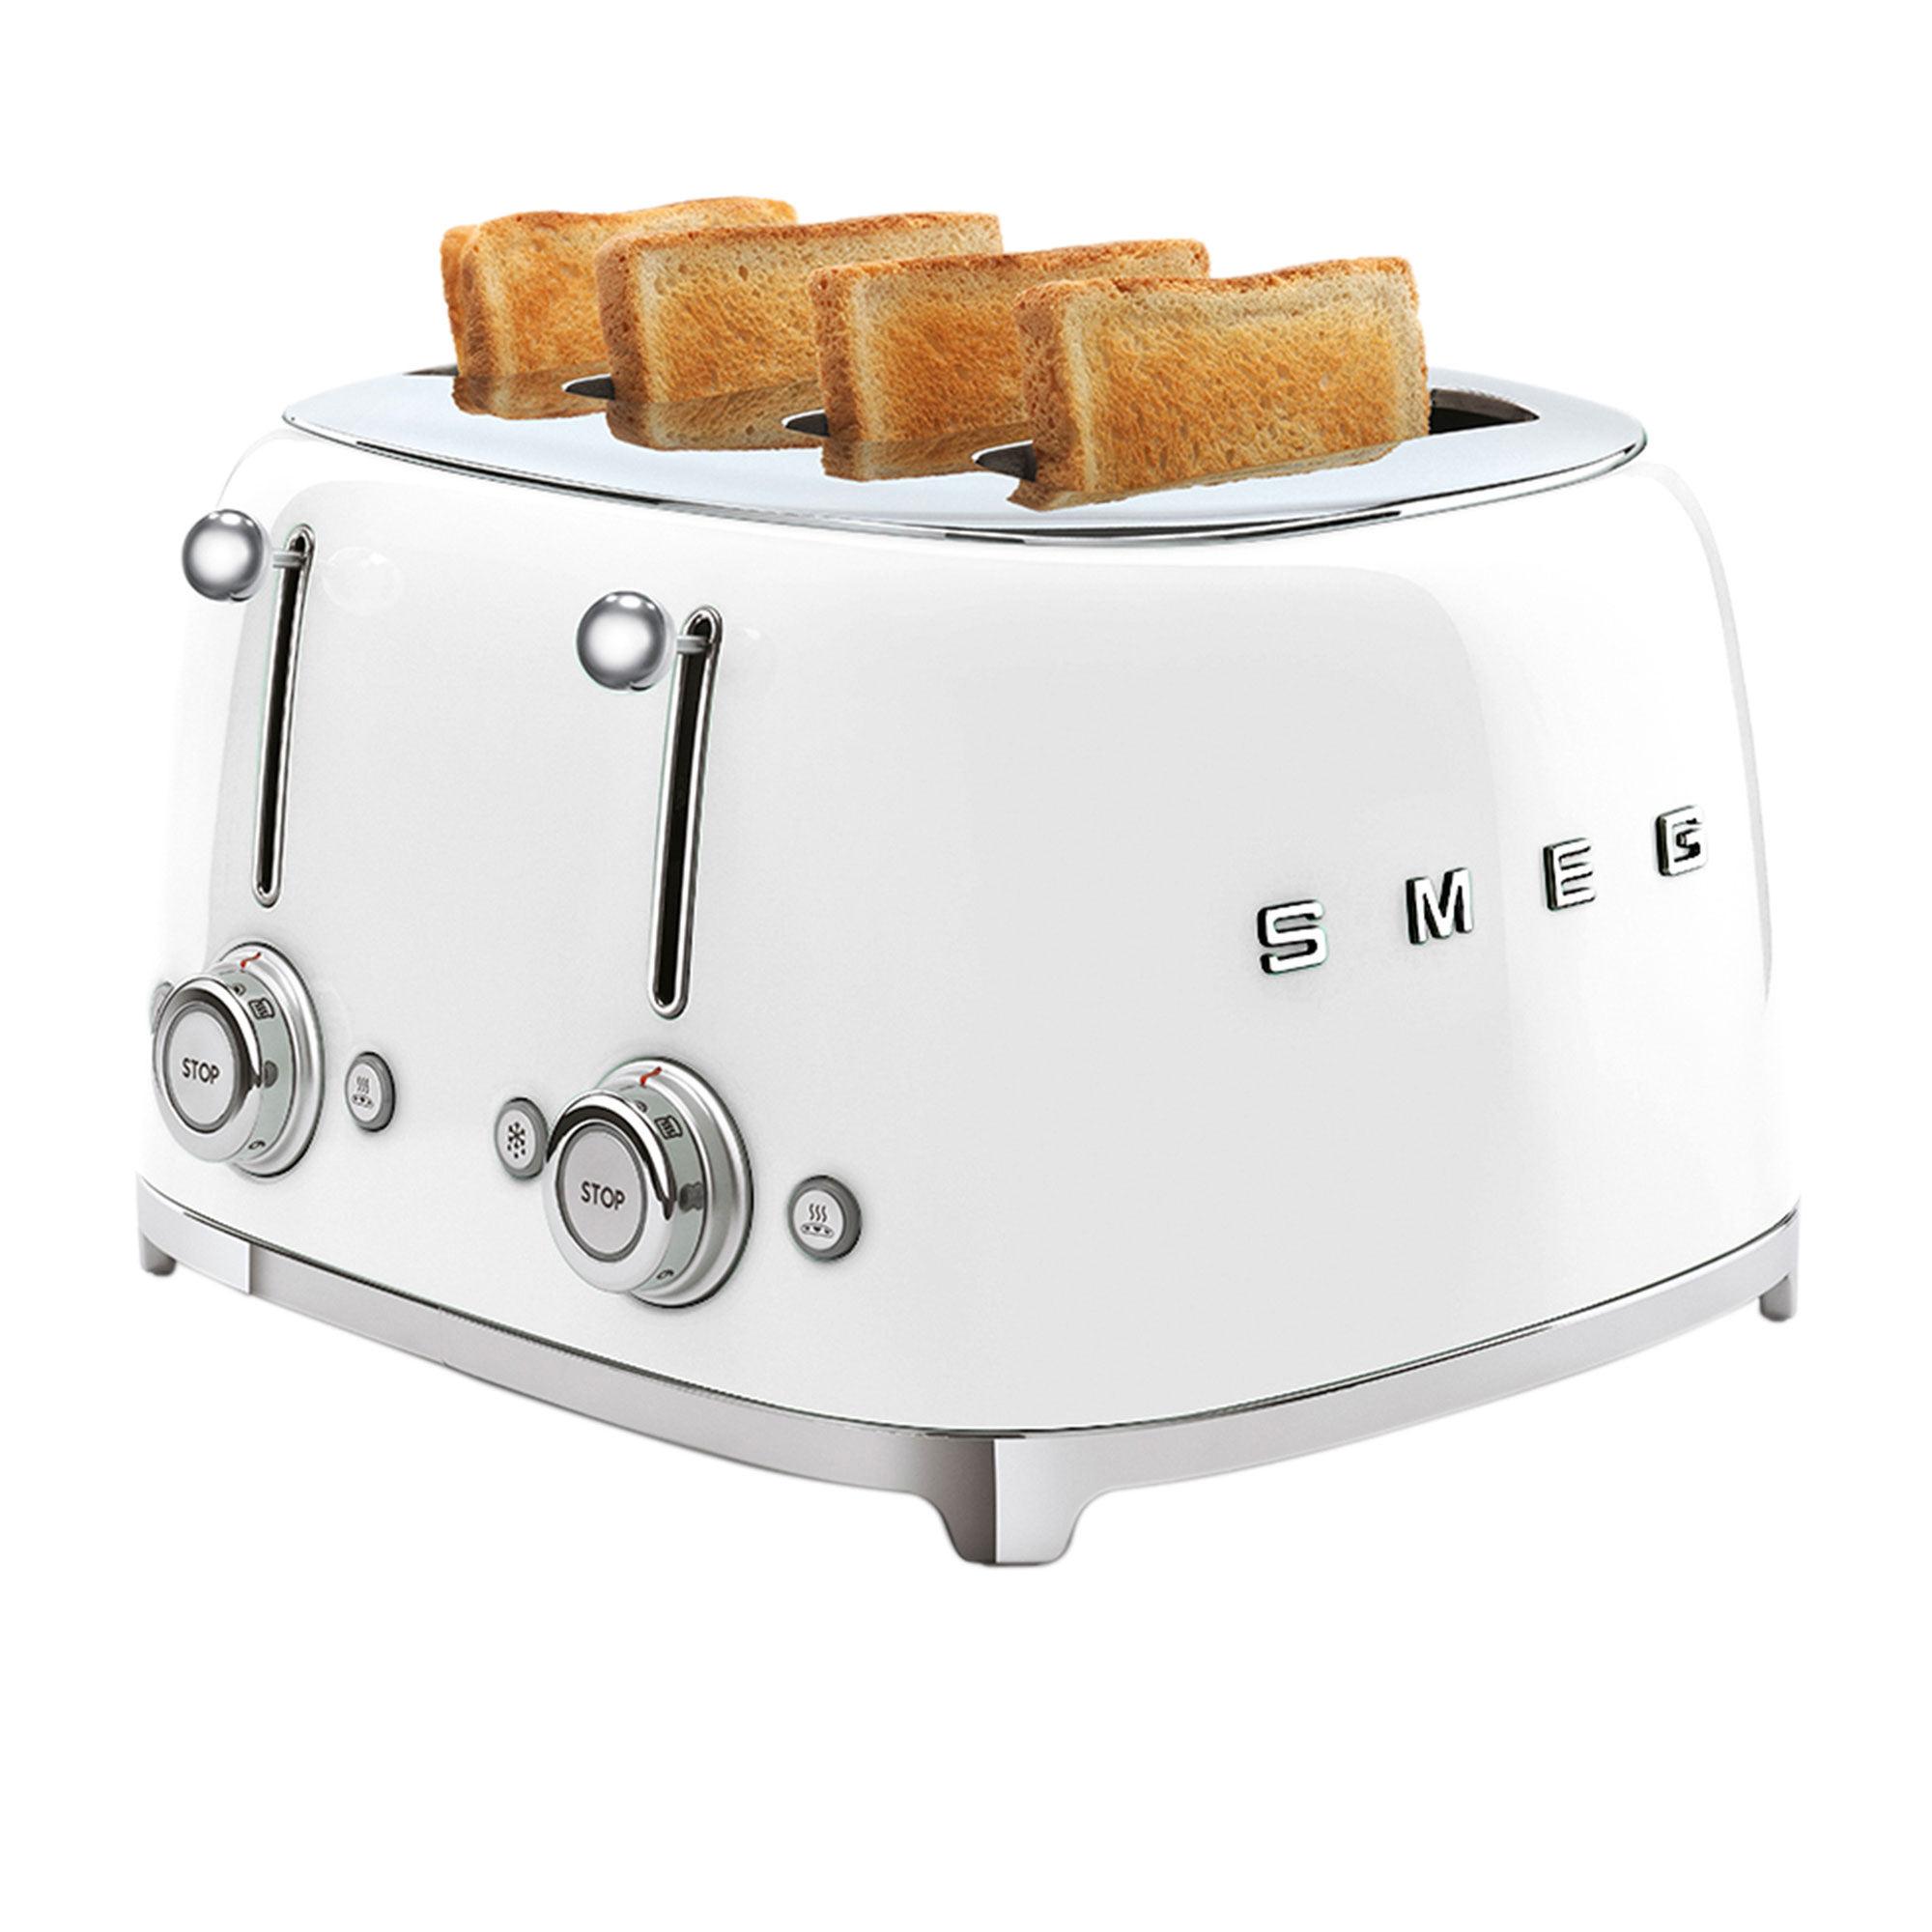 Smeg 50's Retro Style 4 Slot Toaster White Image 3